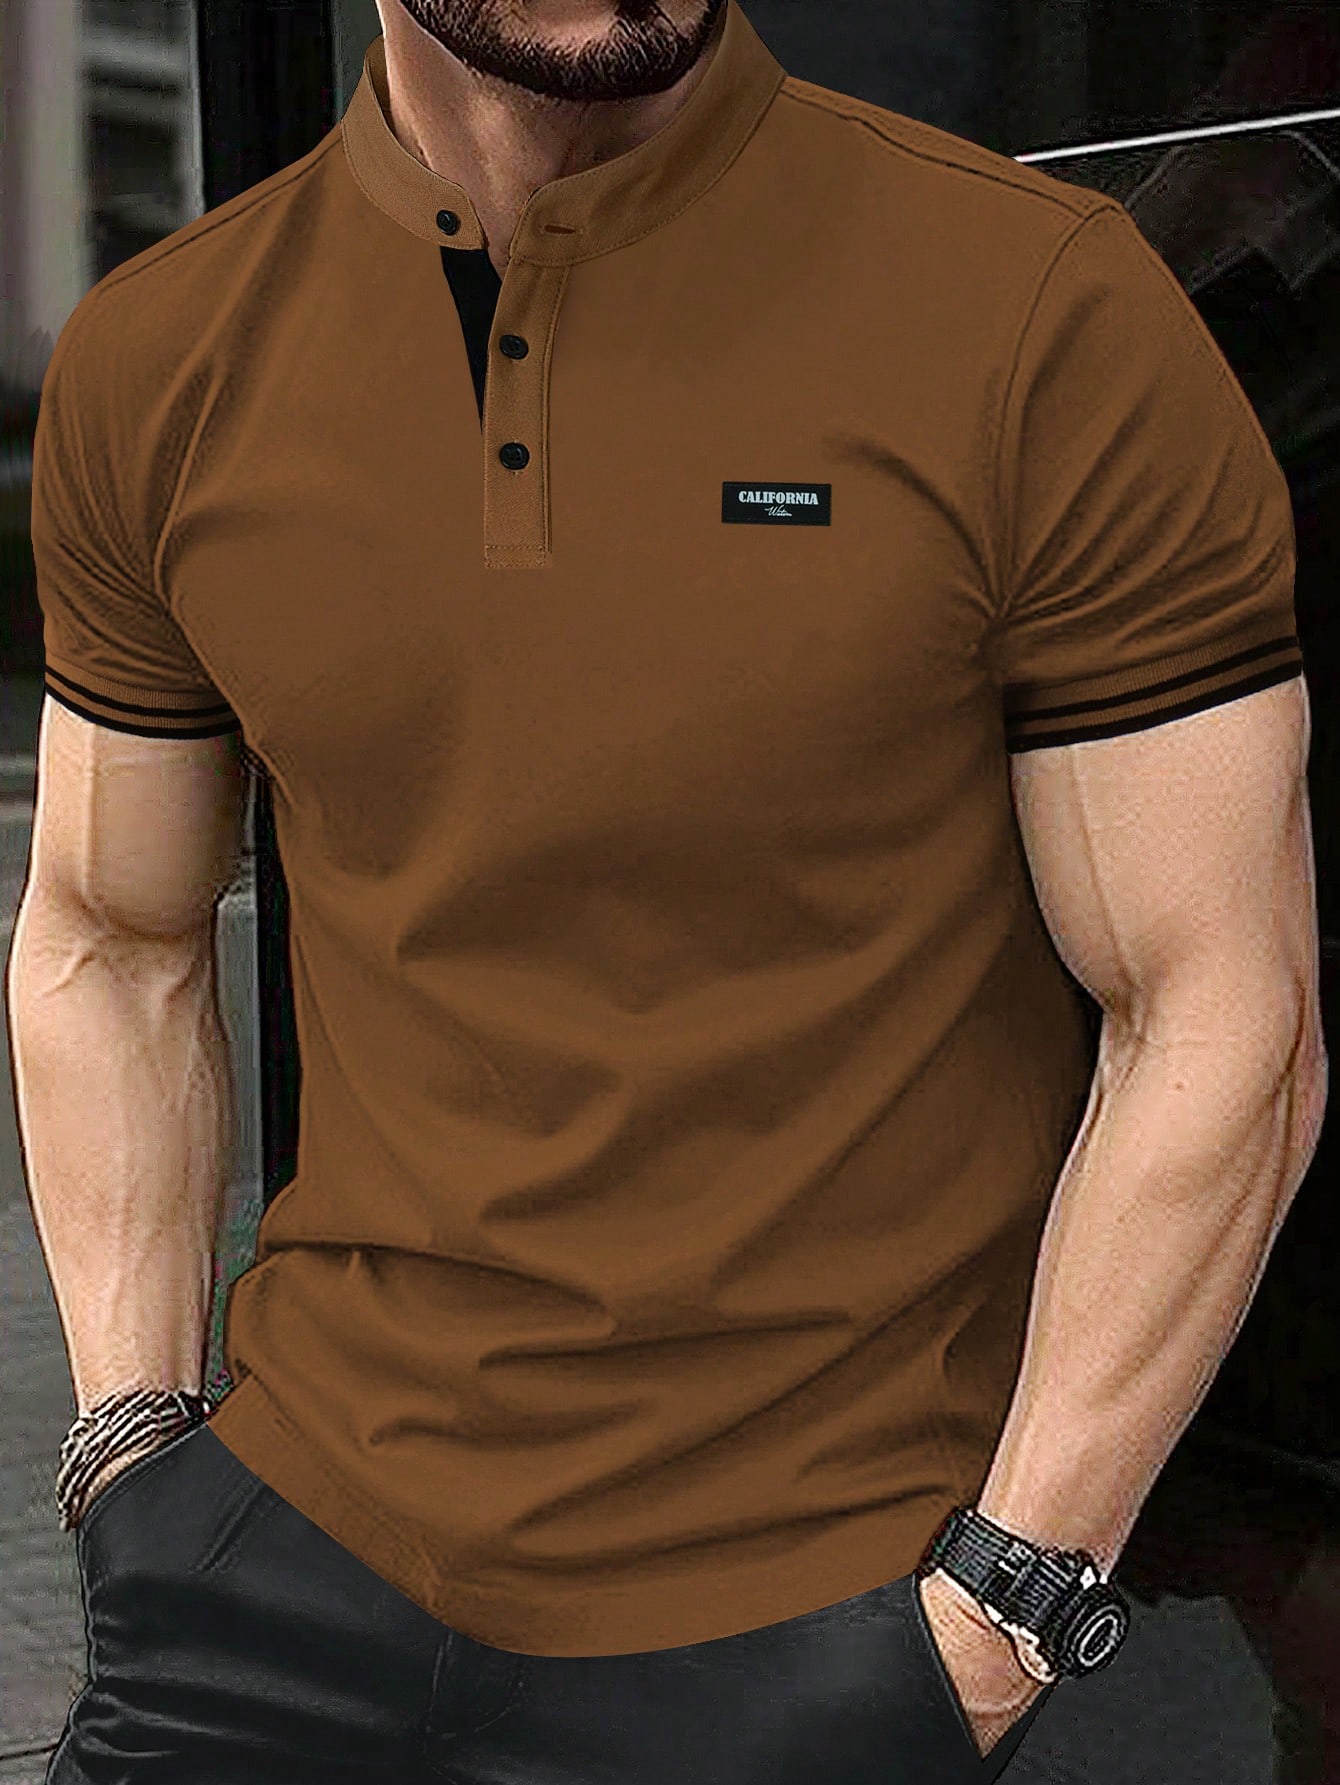 Мужская рубашка-поло с коротким рукавом и планкой на пуговицах Manfinity Homme, коричневый мужская повседневная спортивная рубашка поло tuveke спортивная рубашка поло с воротником стойкой и короткими рукавами высококачественная о